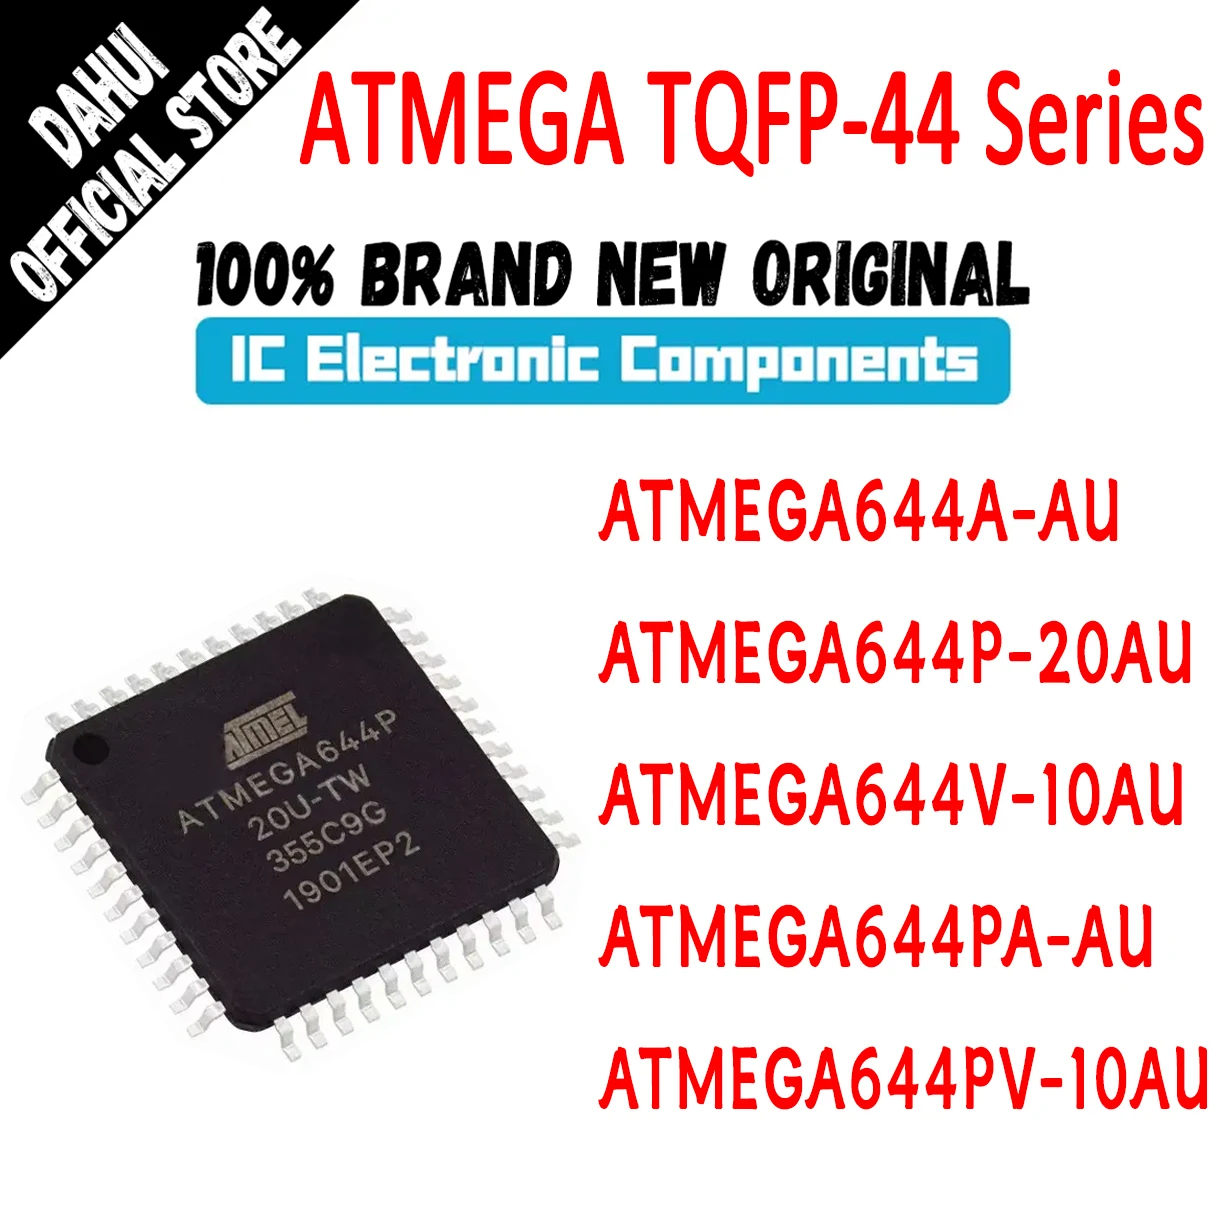 

ATMEGA644A-AU ATMEGA644P-20AU ATMEGA644V-10AU ATMEGA644PA-AU ATMEGA644PV-10AU ATMEGA644 ATMEGA IC MCU Chip TQFP44 in Stock